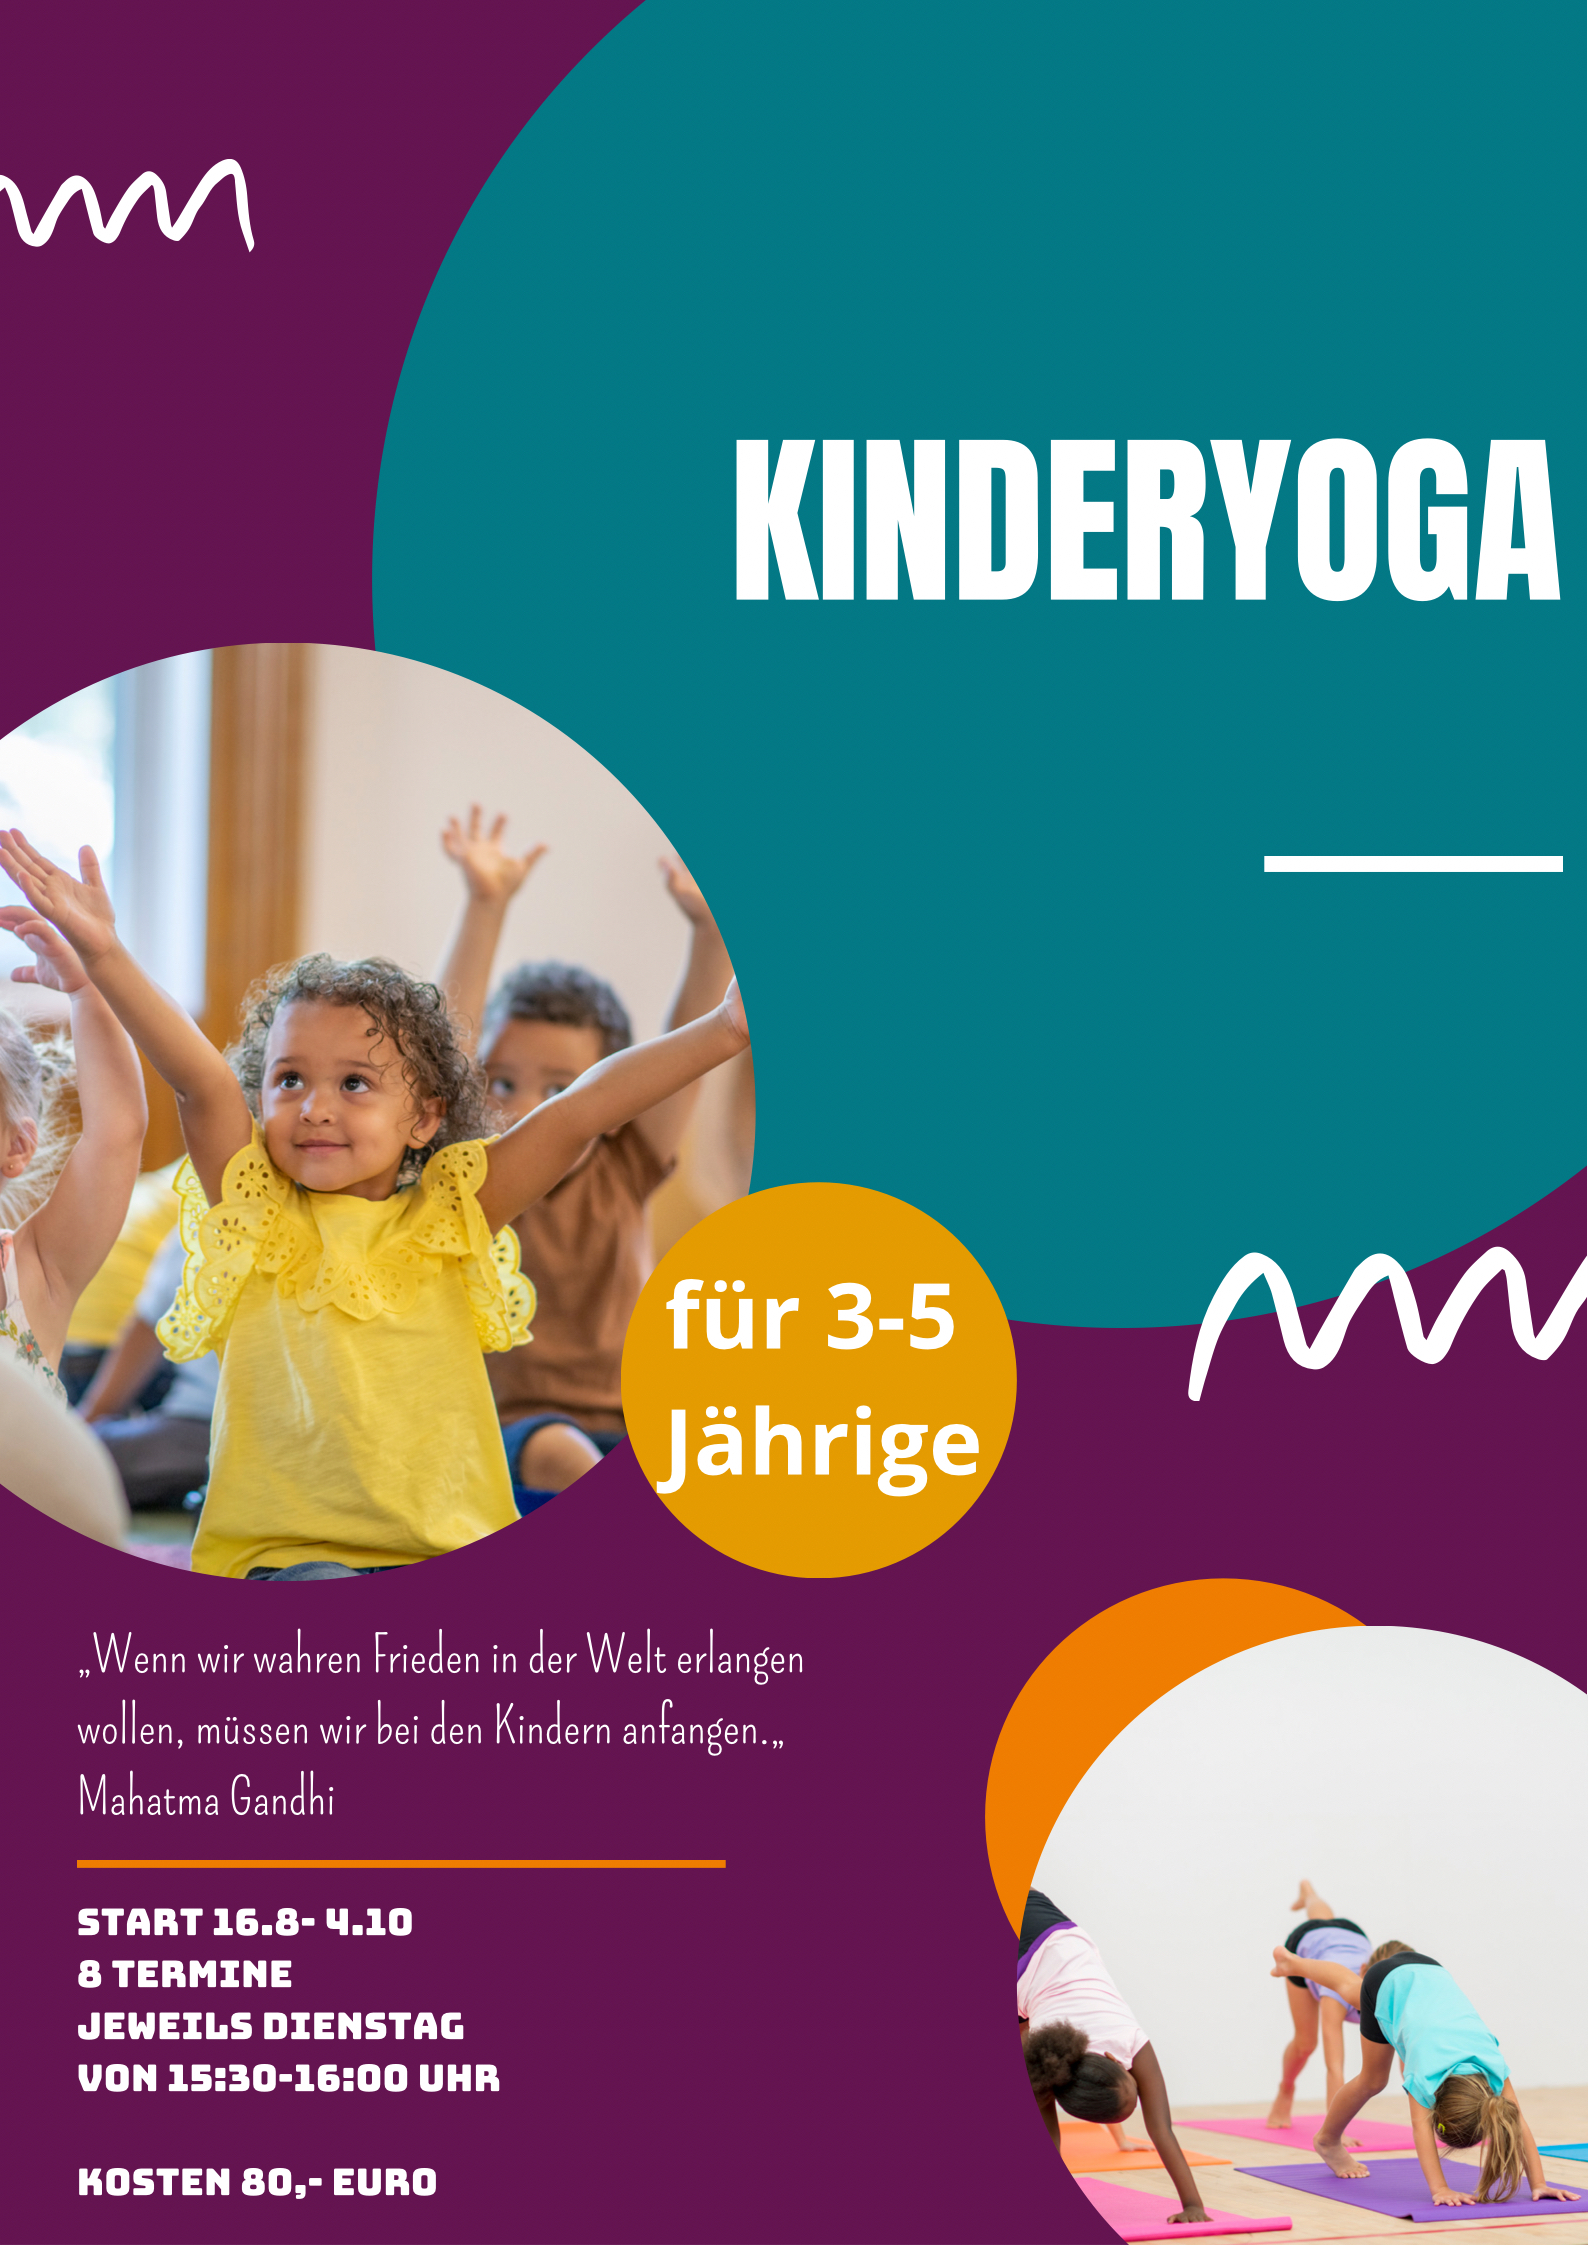 KidsYoga für unsere 3-5 Jährigen